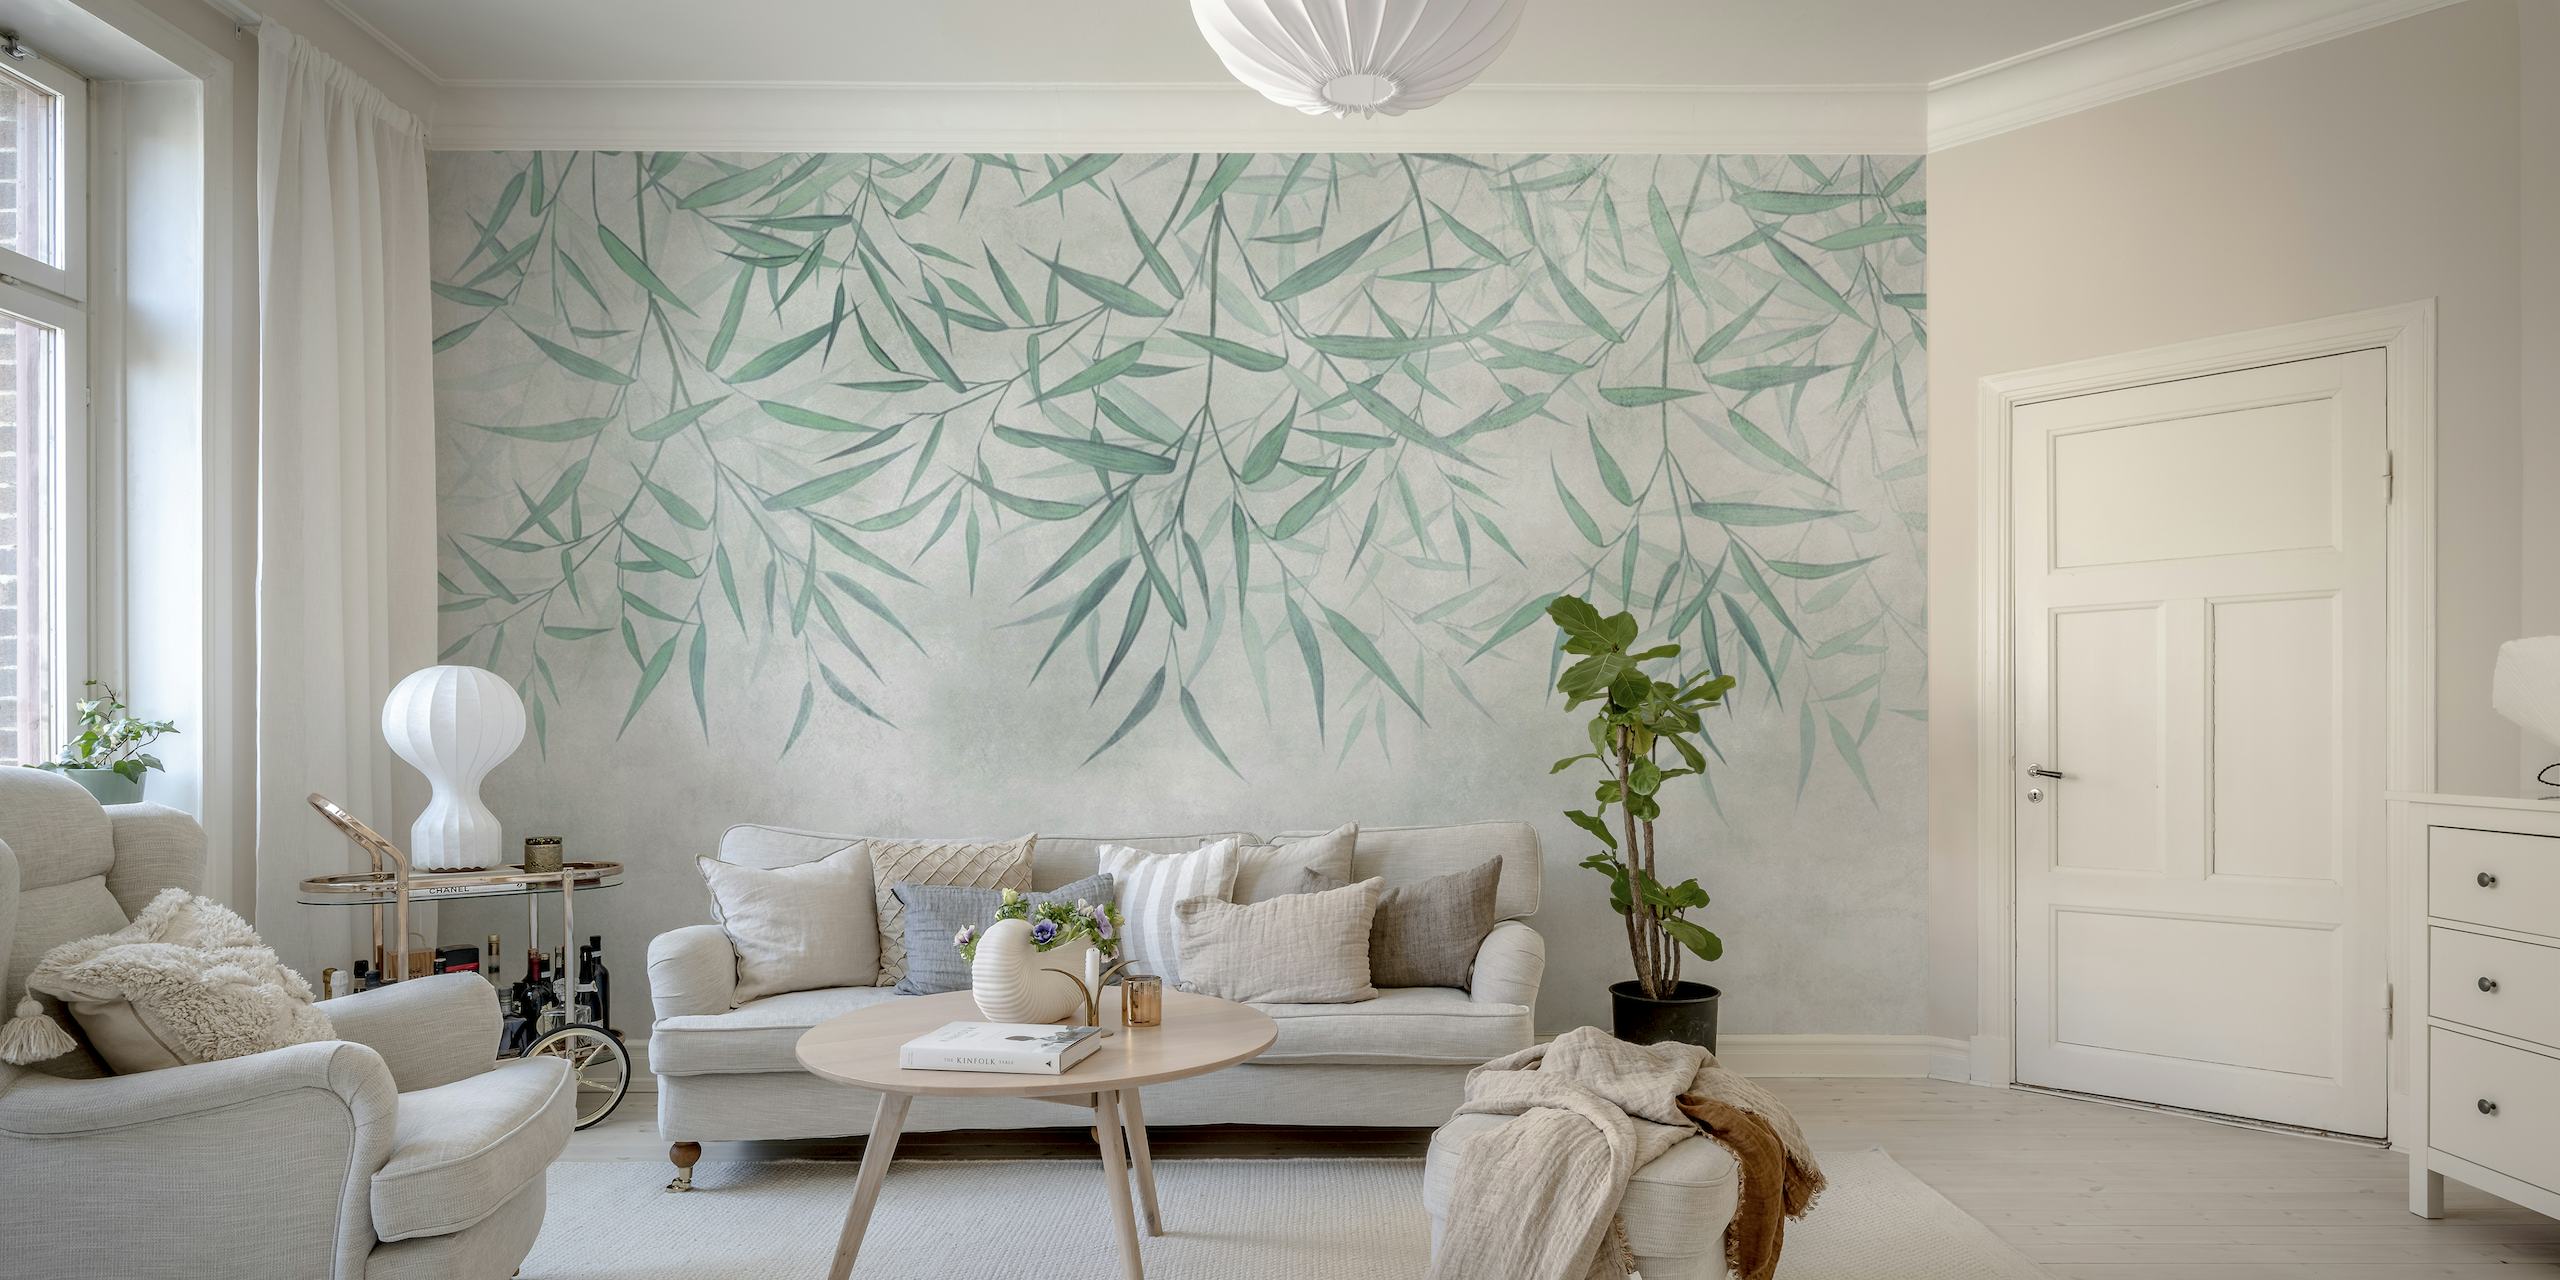 Fototapeta ze zavěšených bambusových listů s měkkým texturovaným pozadím, vytvářející klidnou a přirozenou atmosféru